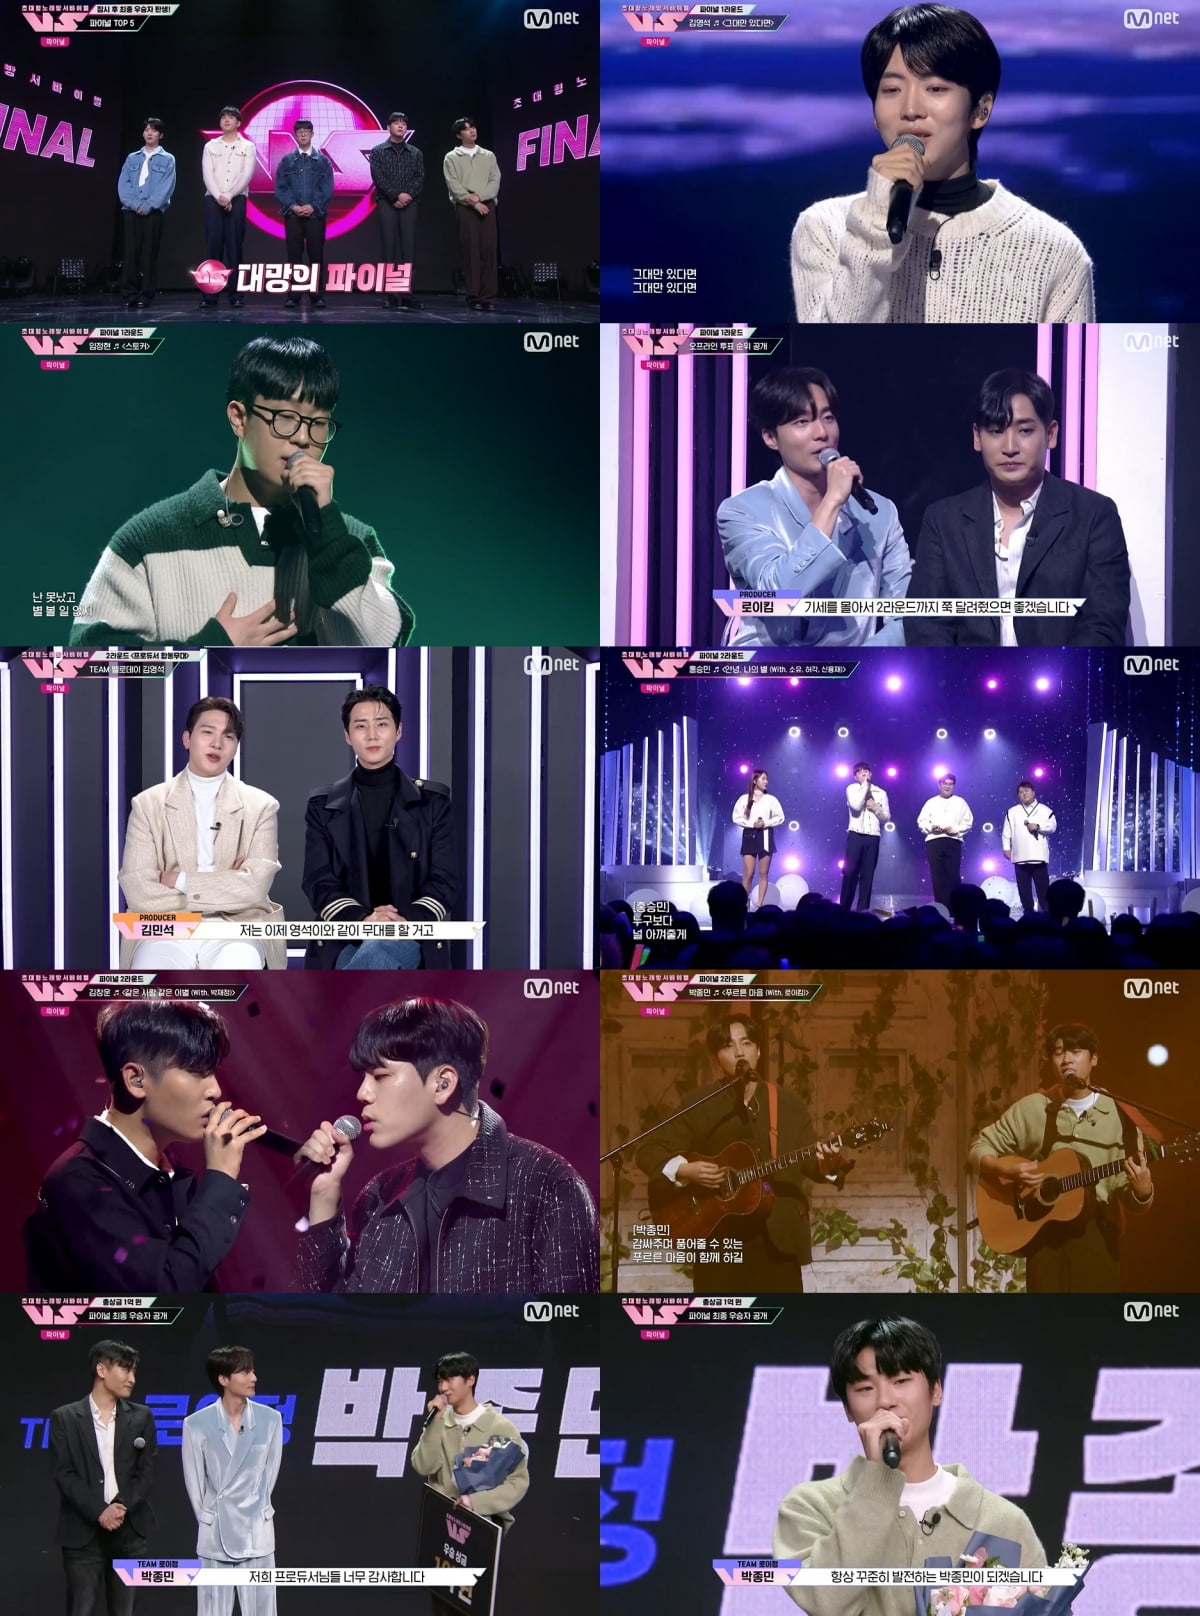 사진 제공: Mnet 초대형 노래방 서바이벌 (브이에스) 영상 캡처